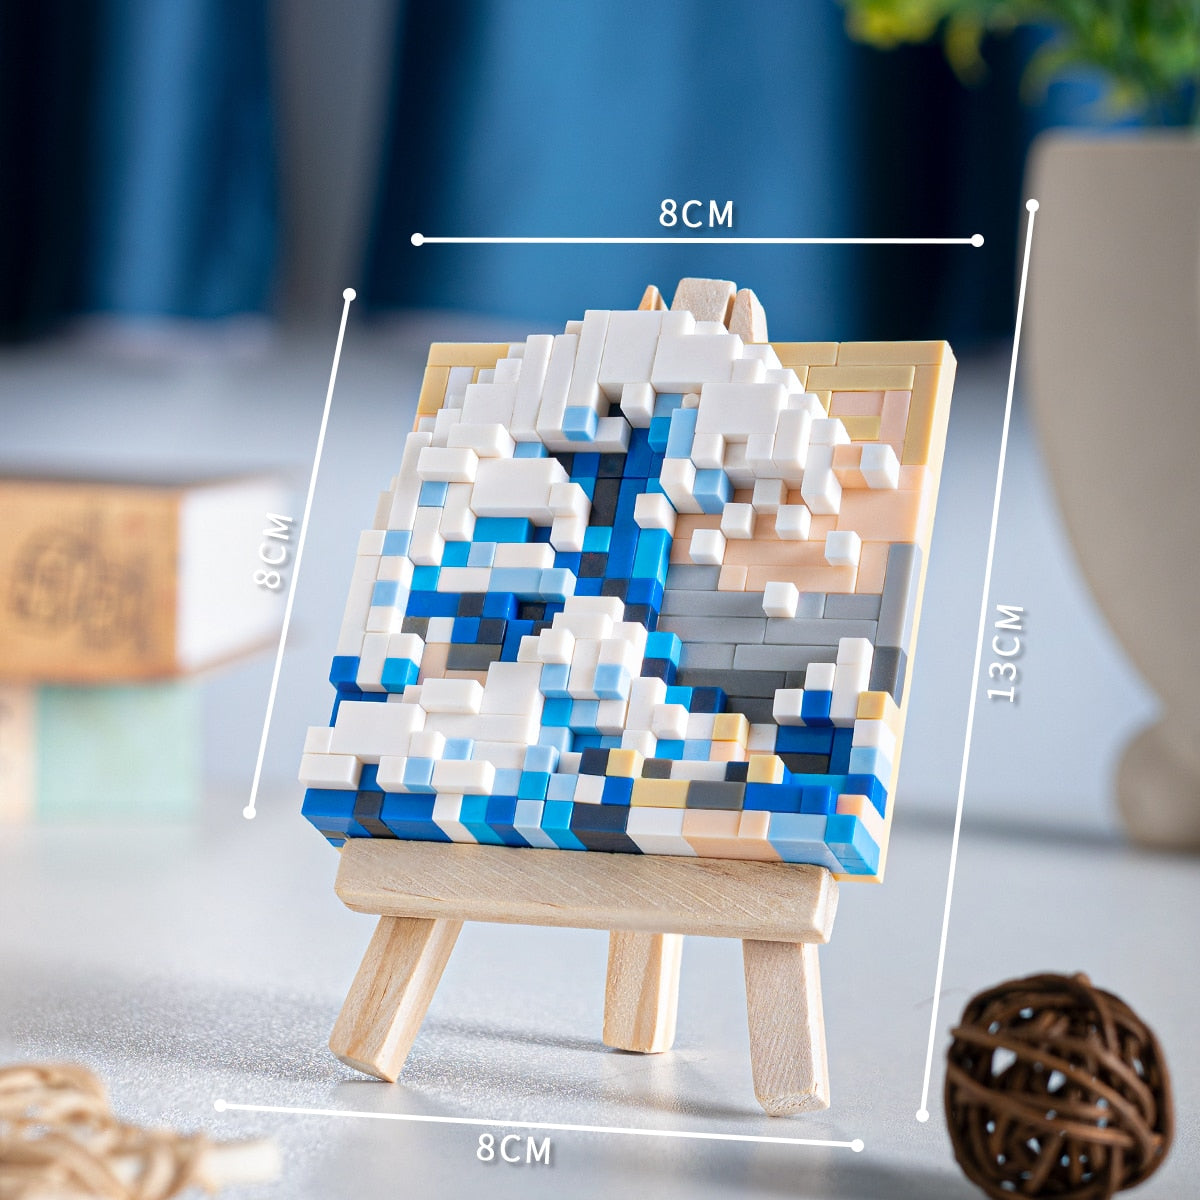 Mini pixel art building block set